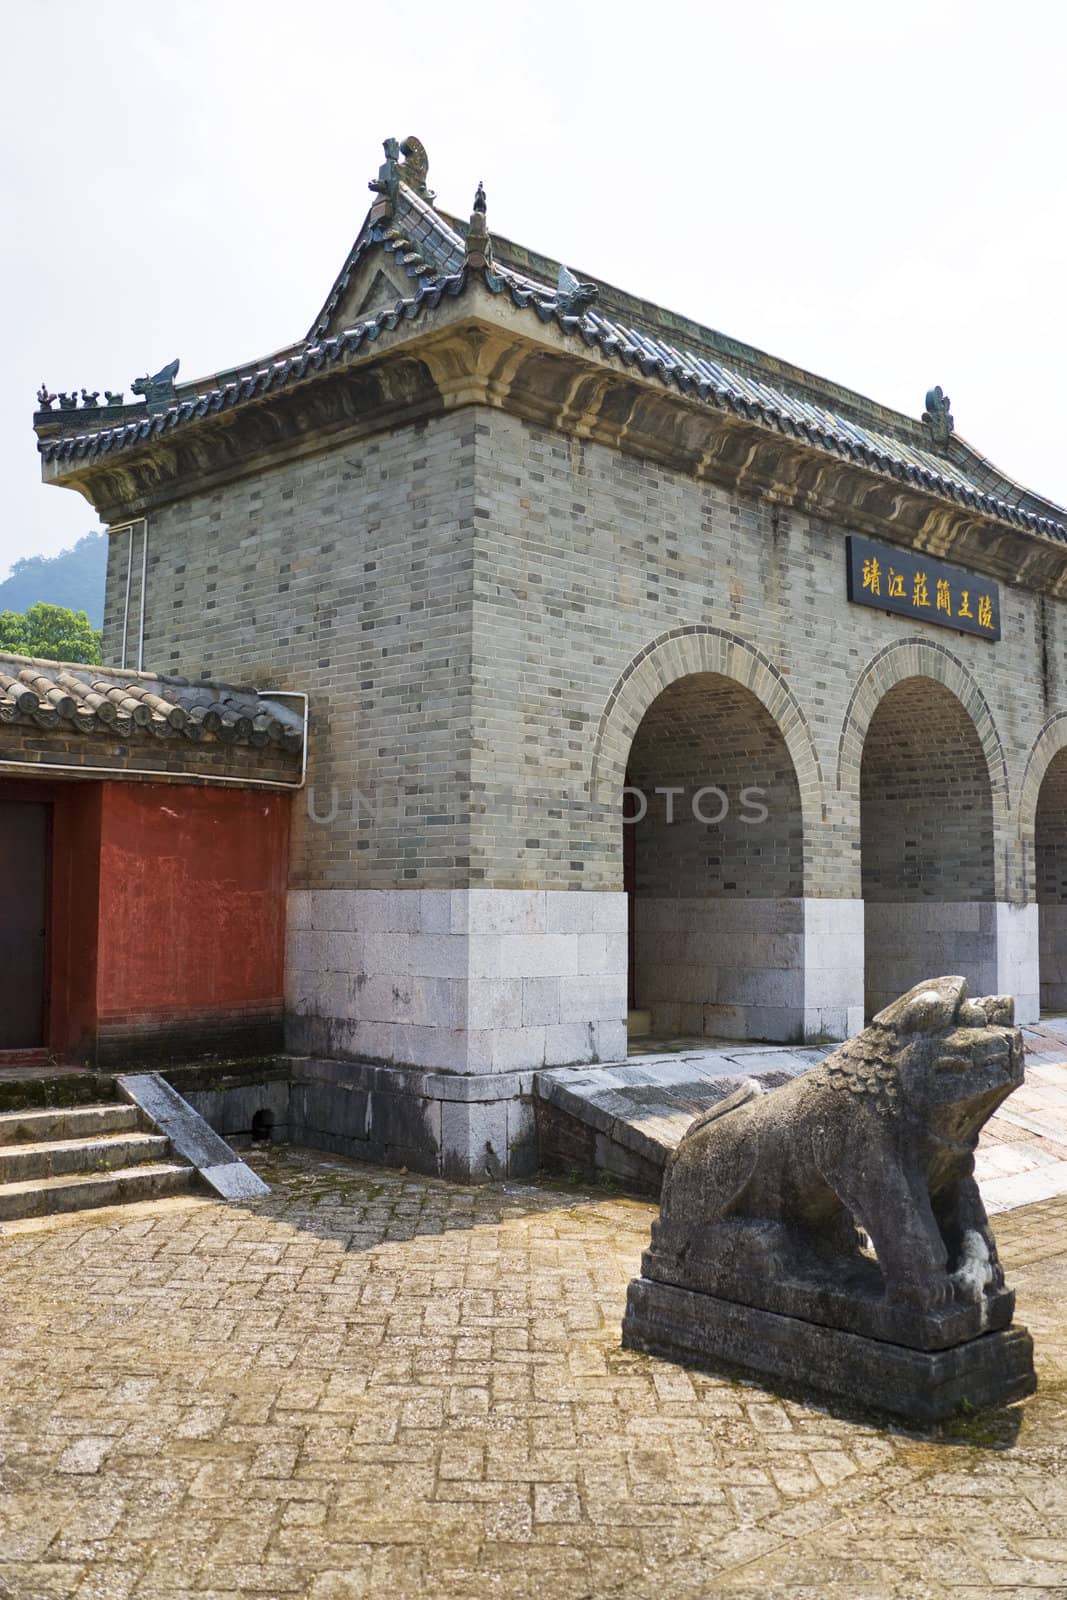 Jingjiang Royal Tombs, Guilin, China by shariffc